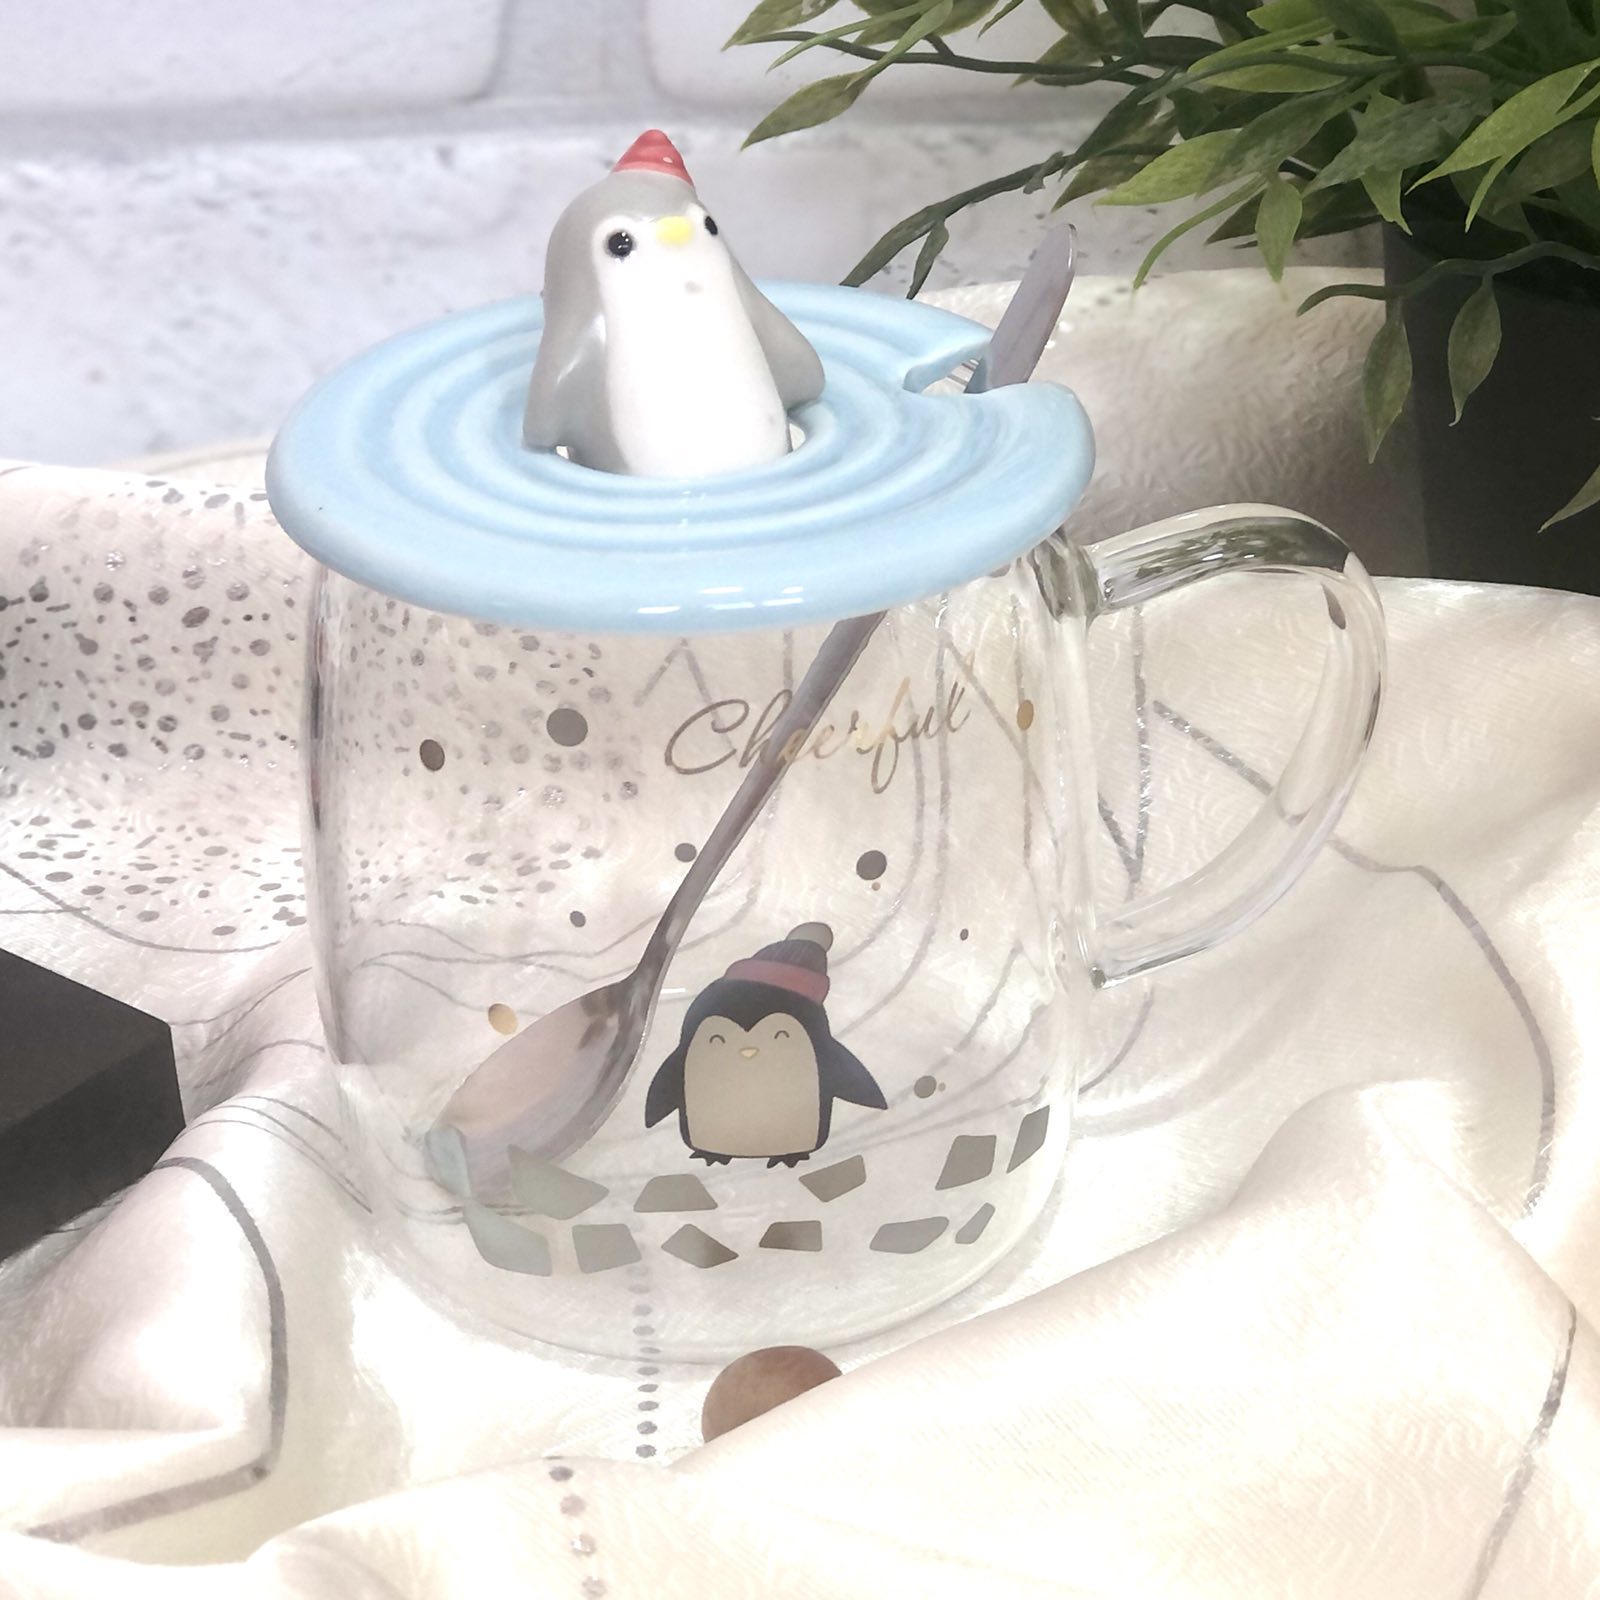 Чашка с крышкой и ложкой 400 мл "Penguin" стекло Stenson - 00527 ✅ базовая цена $5.56 ✔ Опт ✔ Скидки ✔ Заходите! - Интернет-магазин ✅ Фортуна-опт ✅